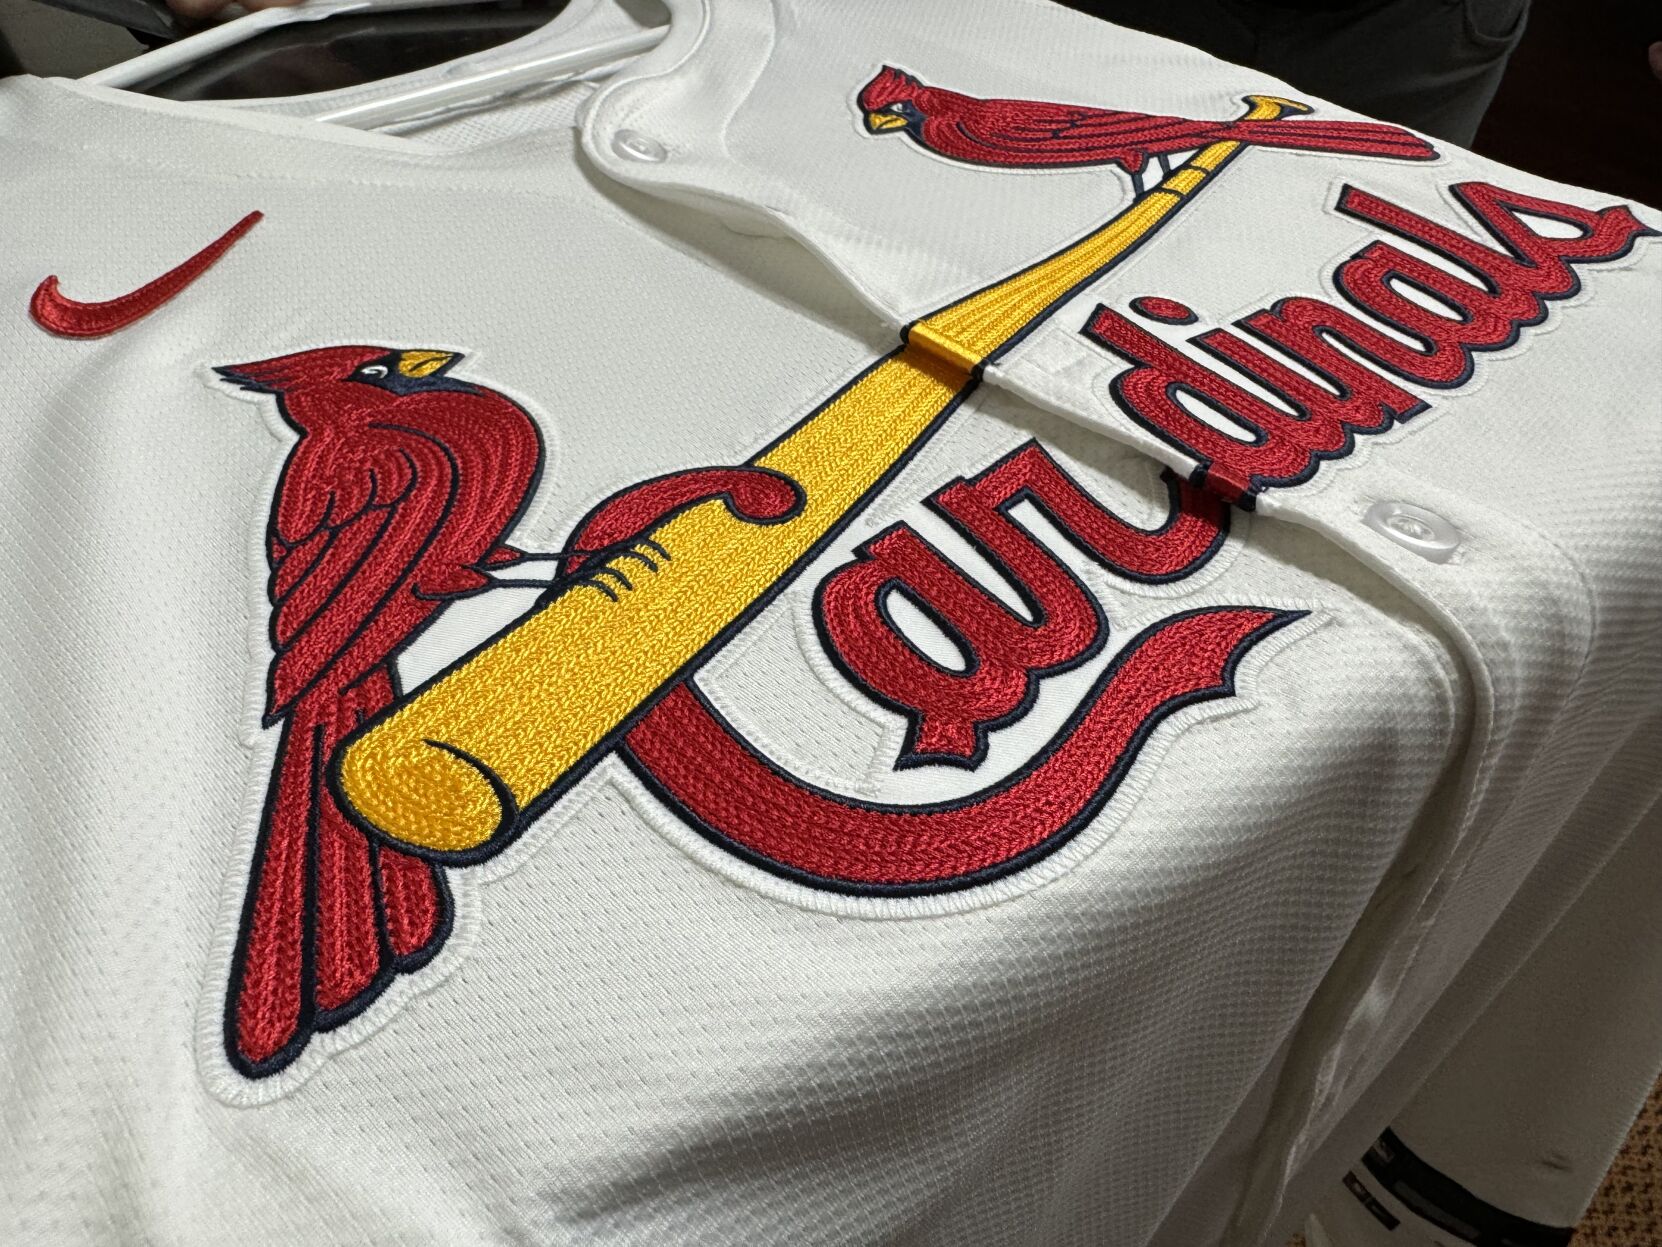 cardinals gear